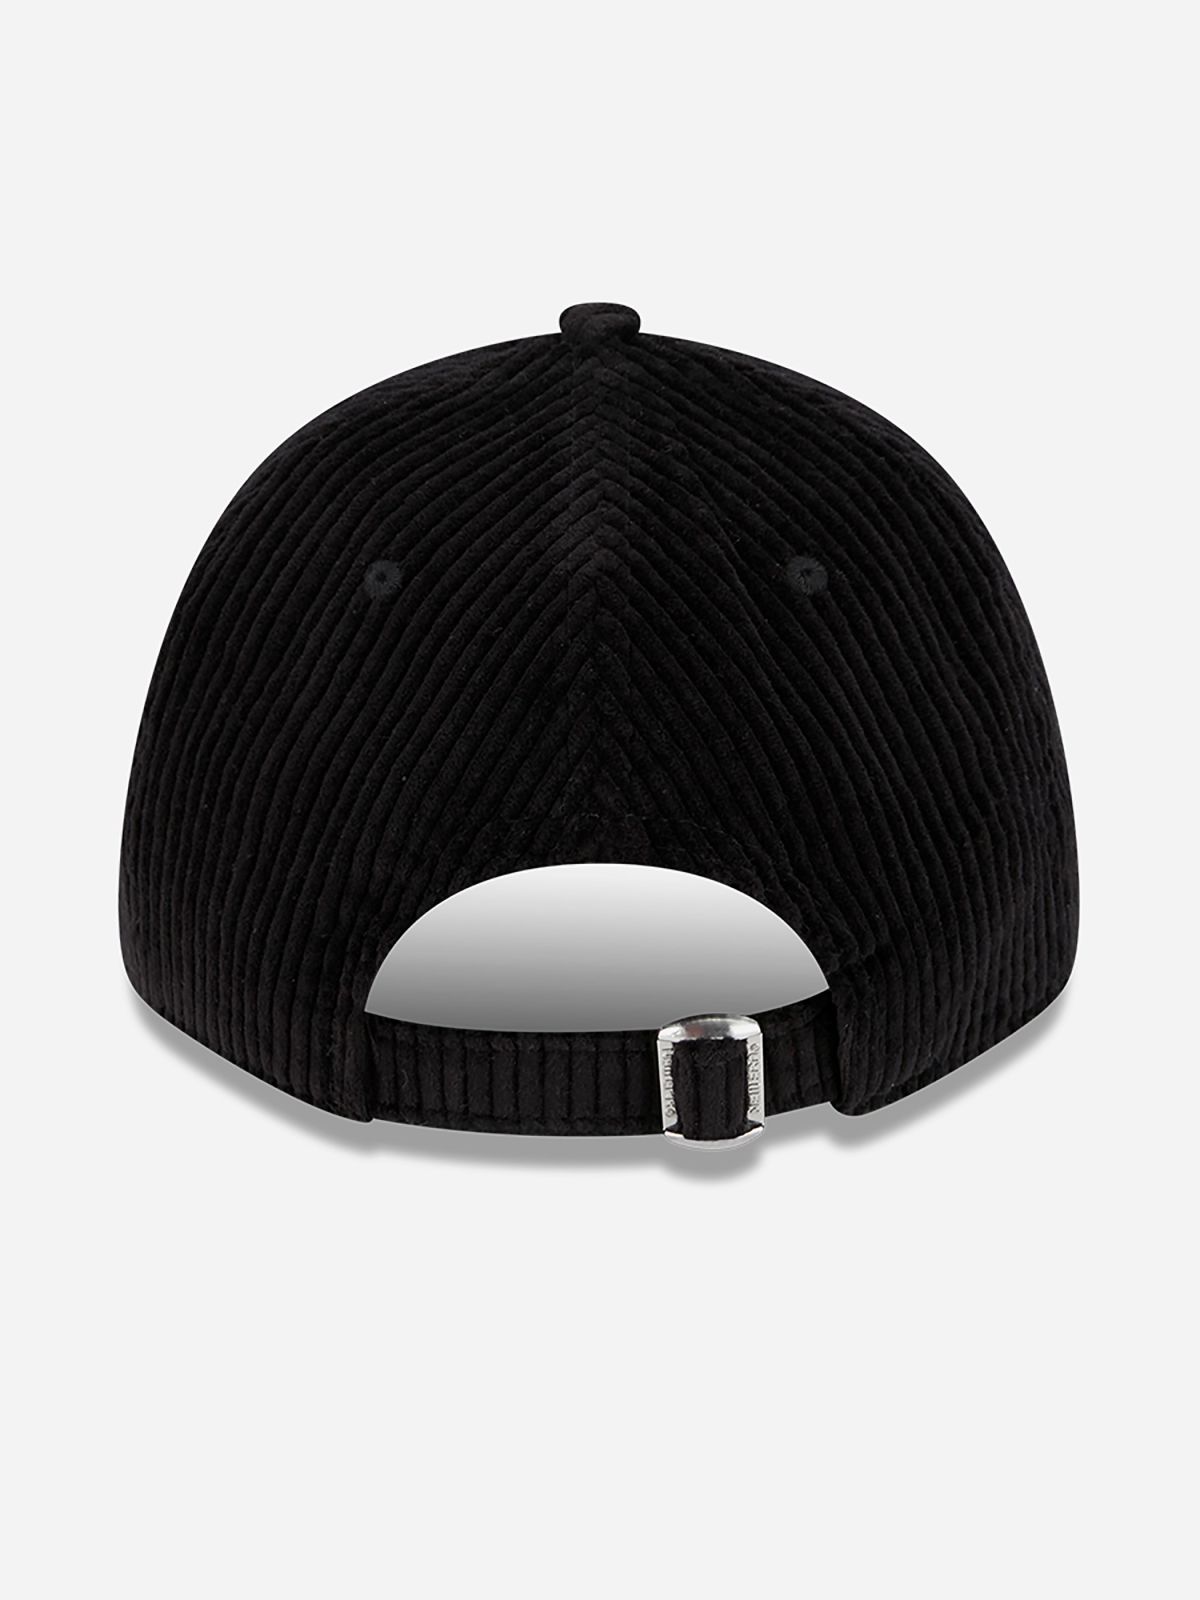  כובע מצחייה קורדרוי עם לוגו / גברים של NEW ERA